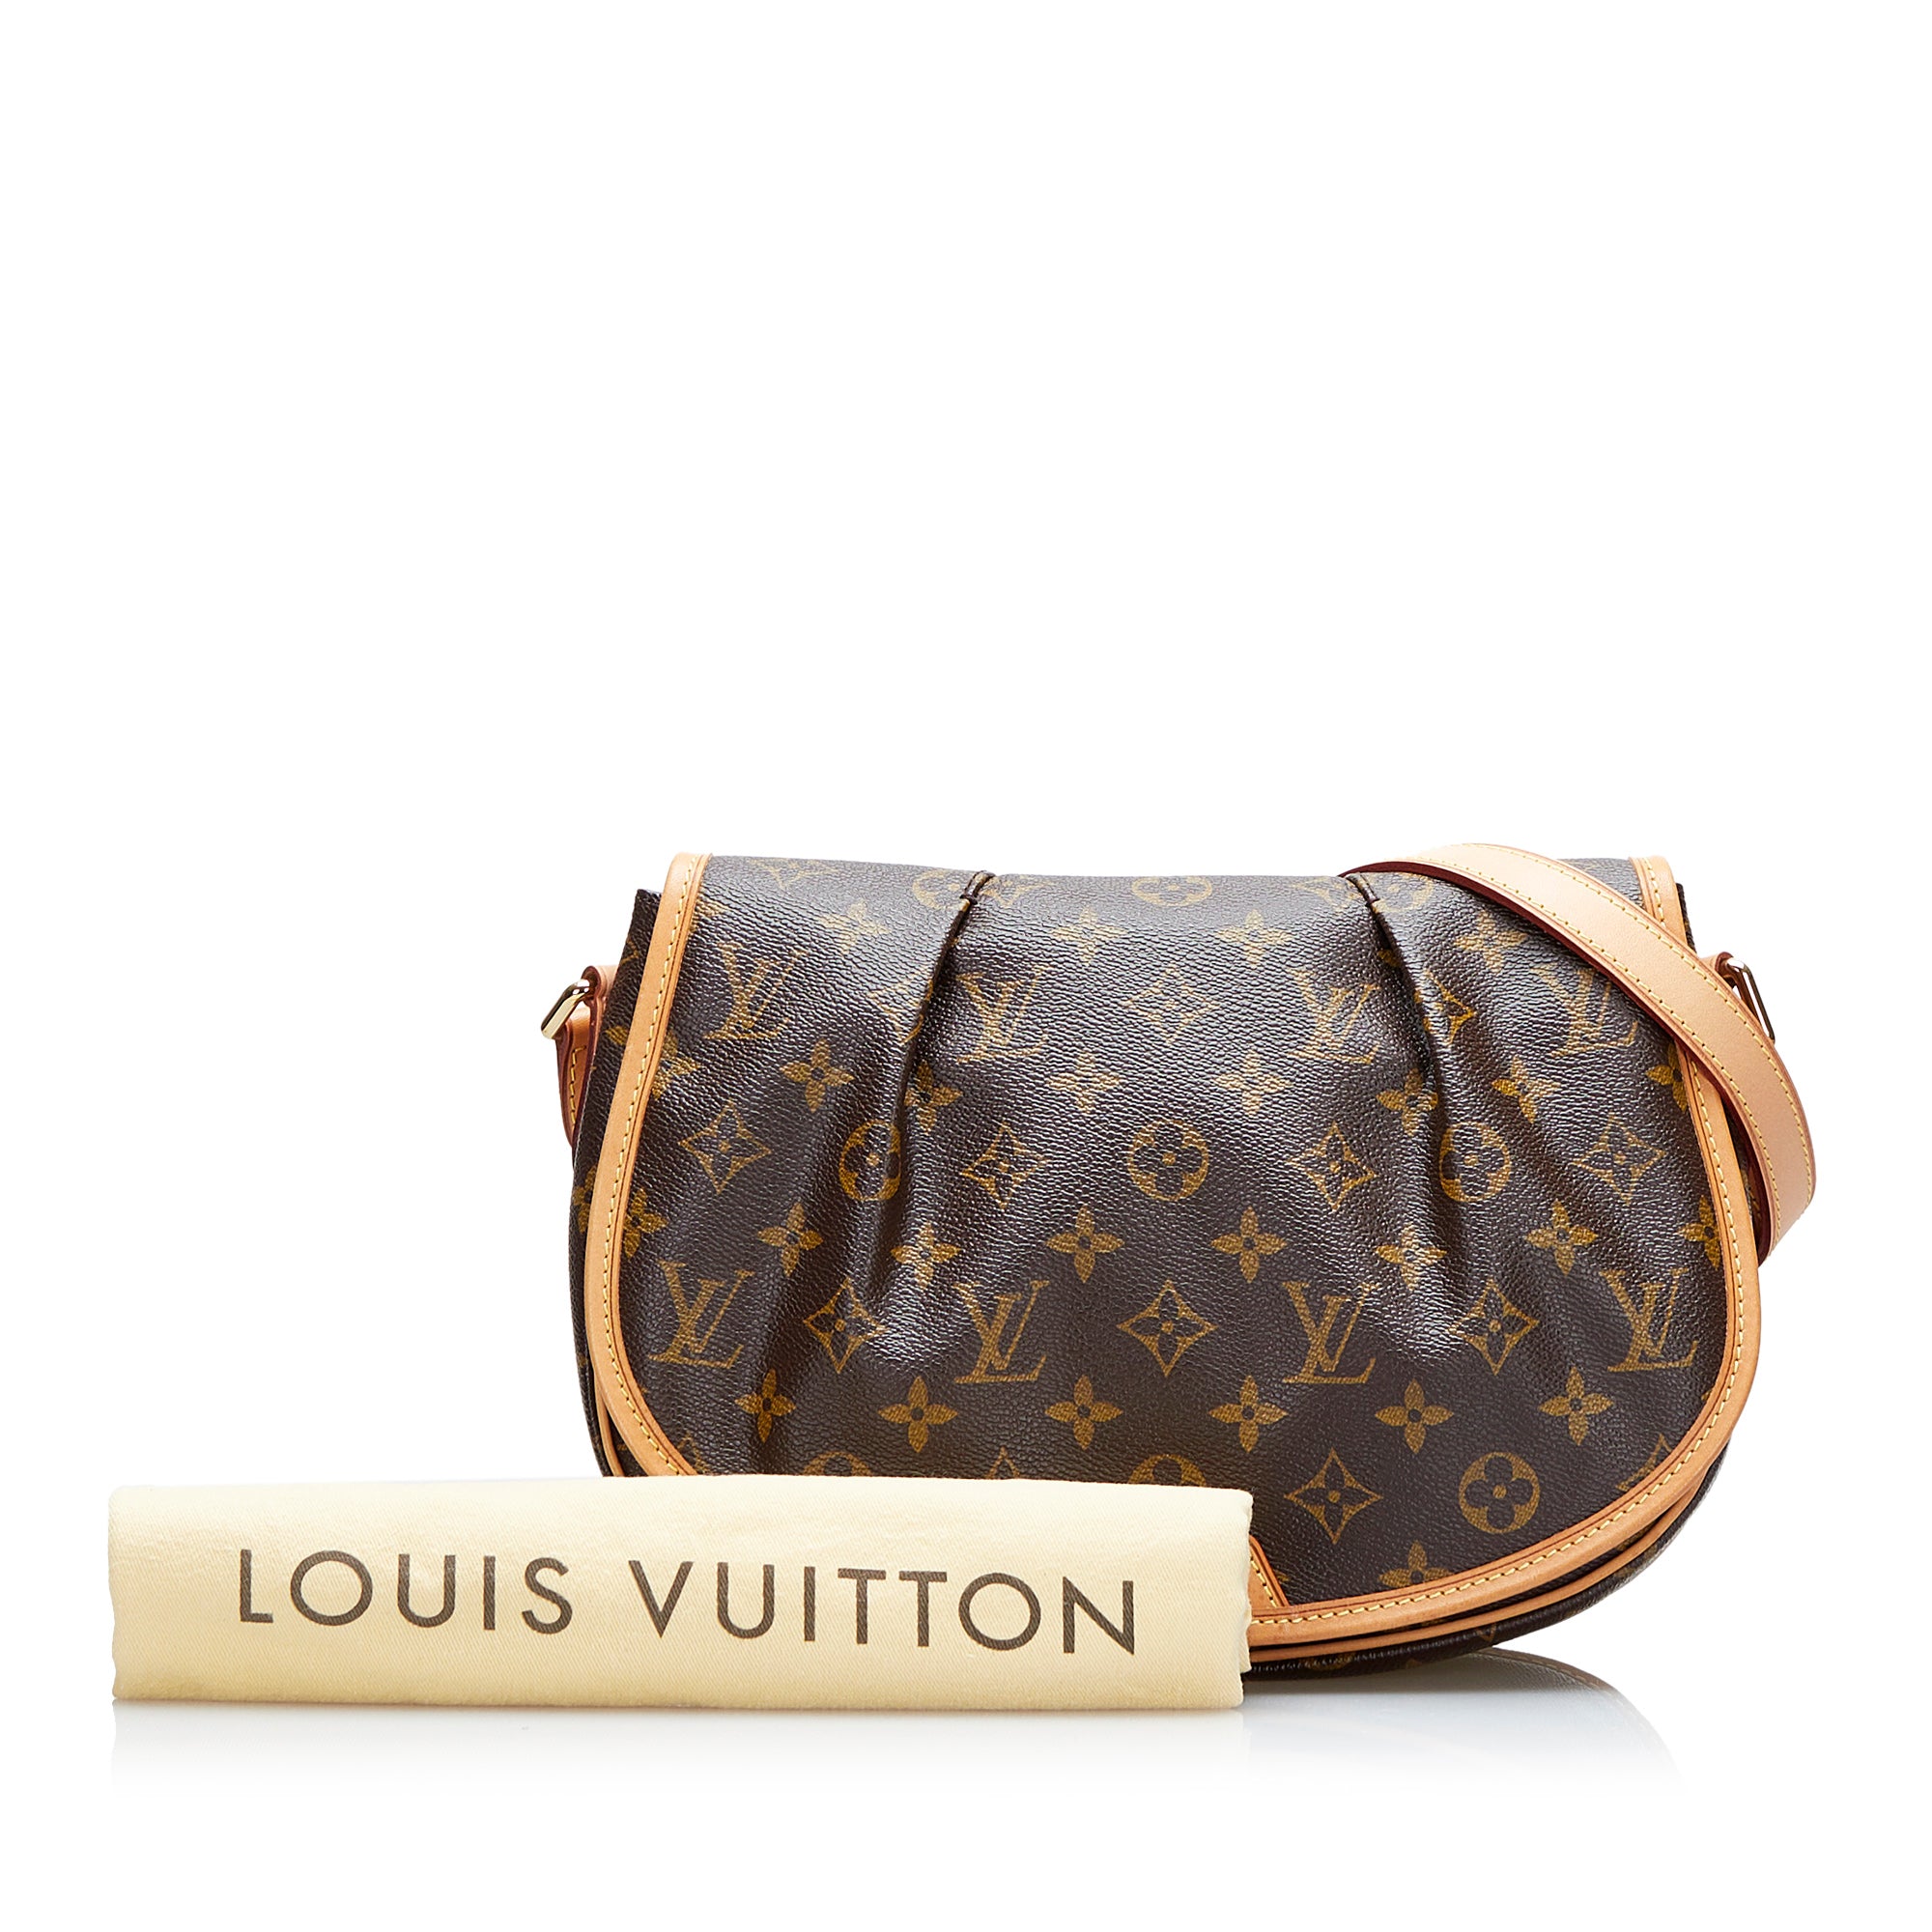 Louis Vuitton Monogram Canvas Menilmontant PM Bag Louis Vuitton